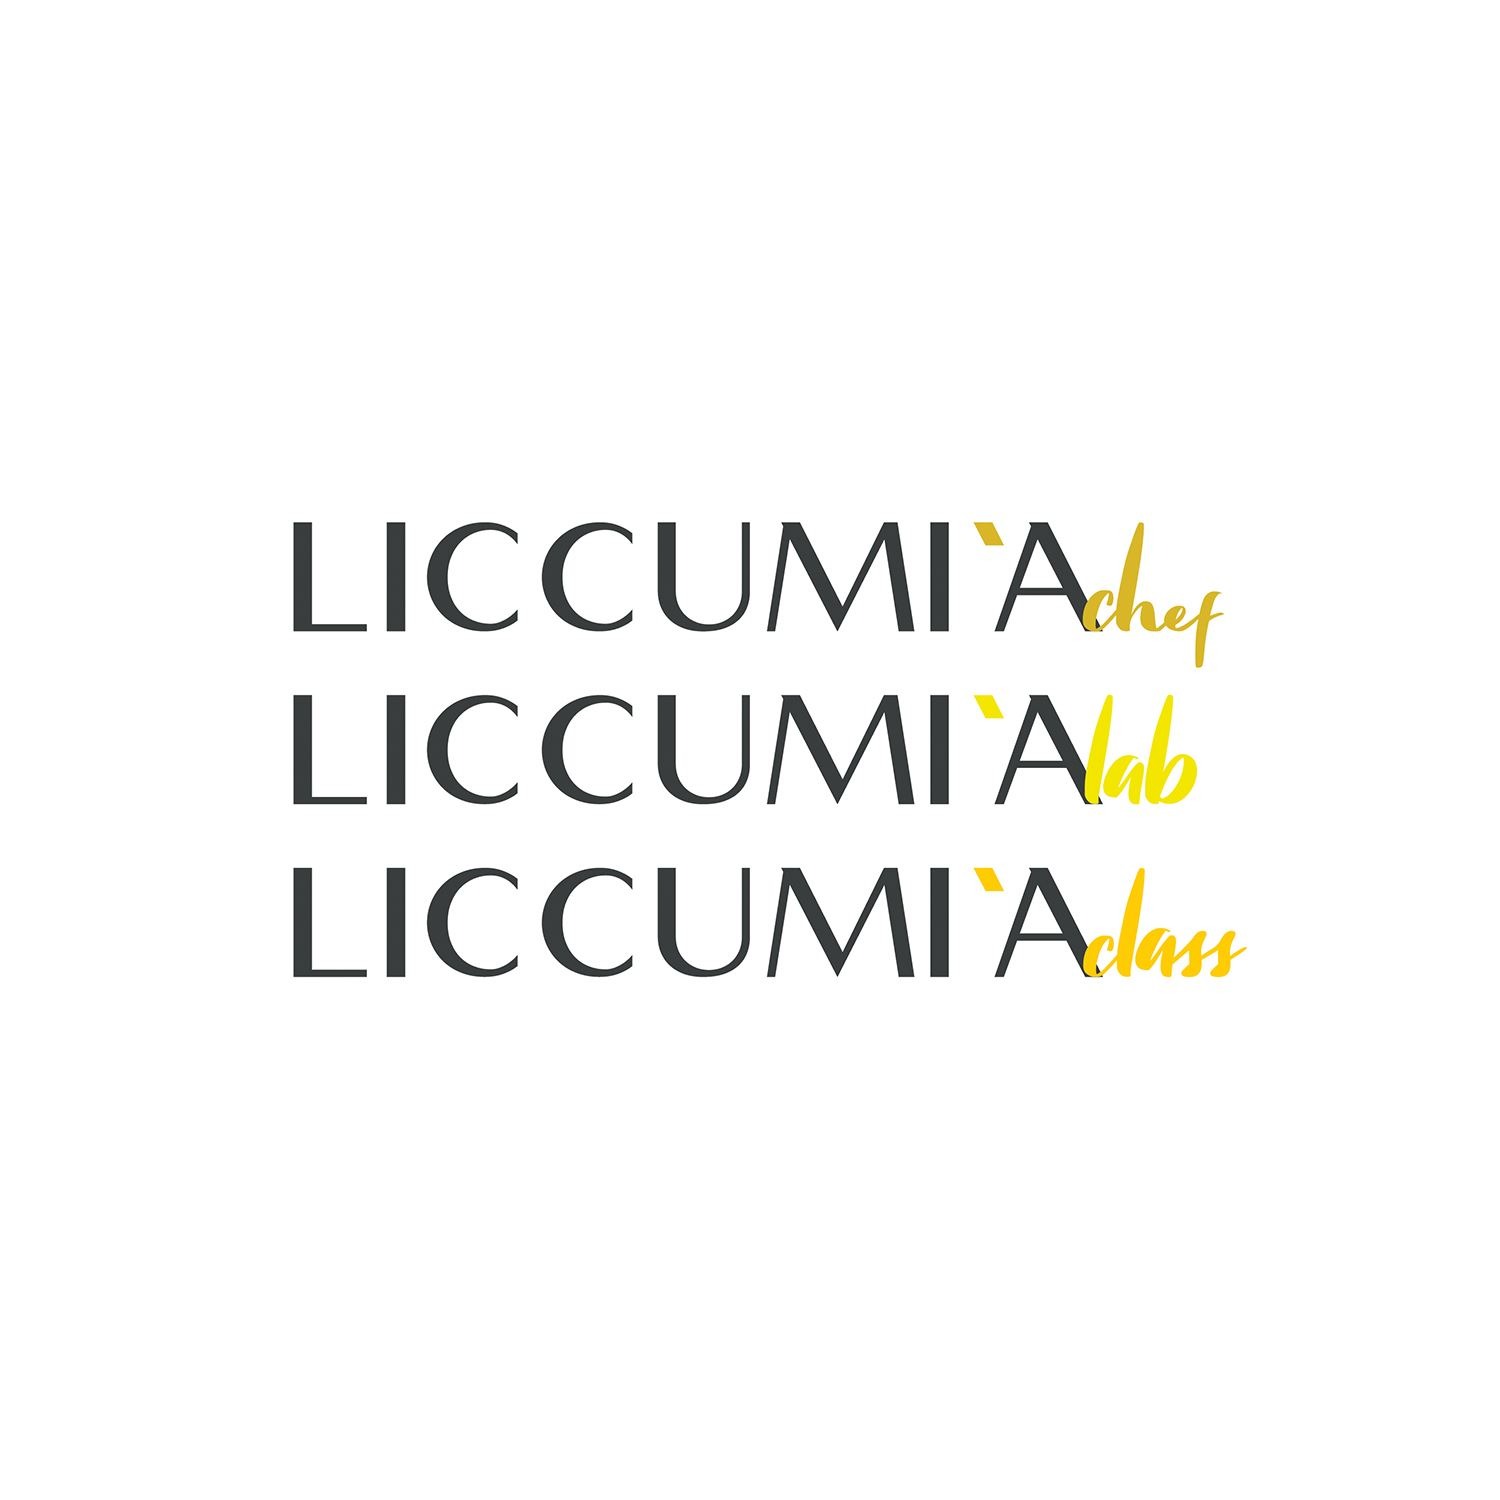 Giulia Doria Architetto | Lavica Studio | Liccumia Graphic design | branding | logo